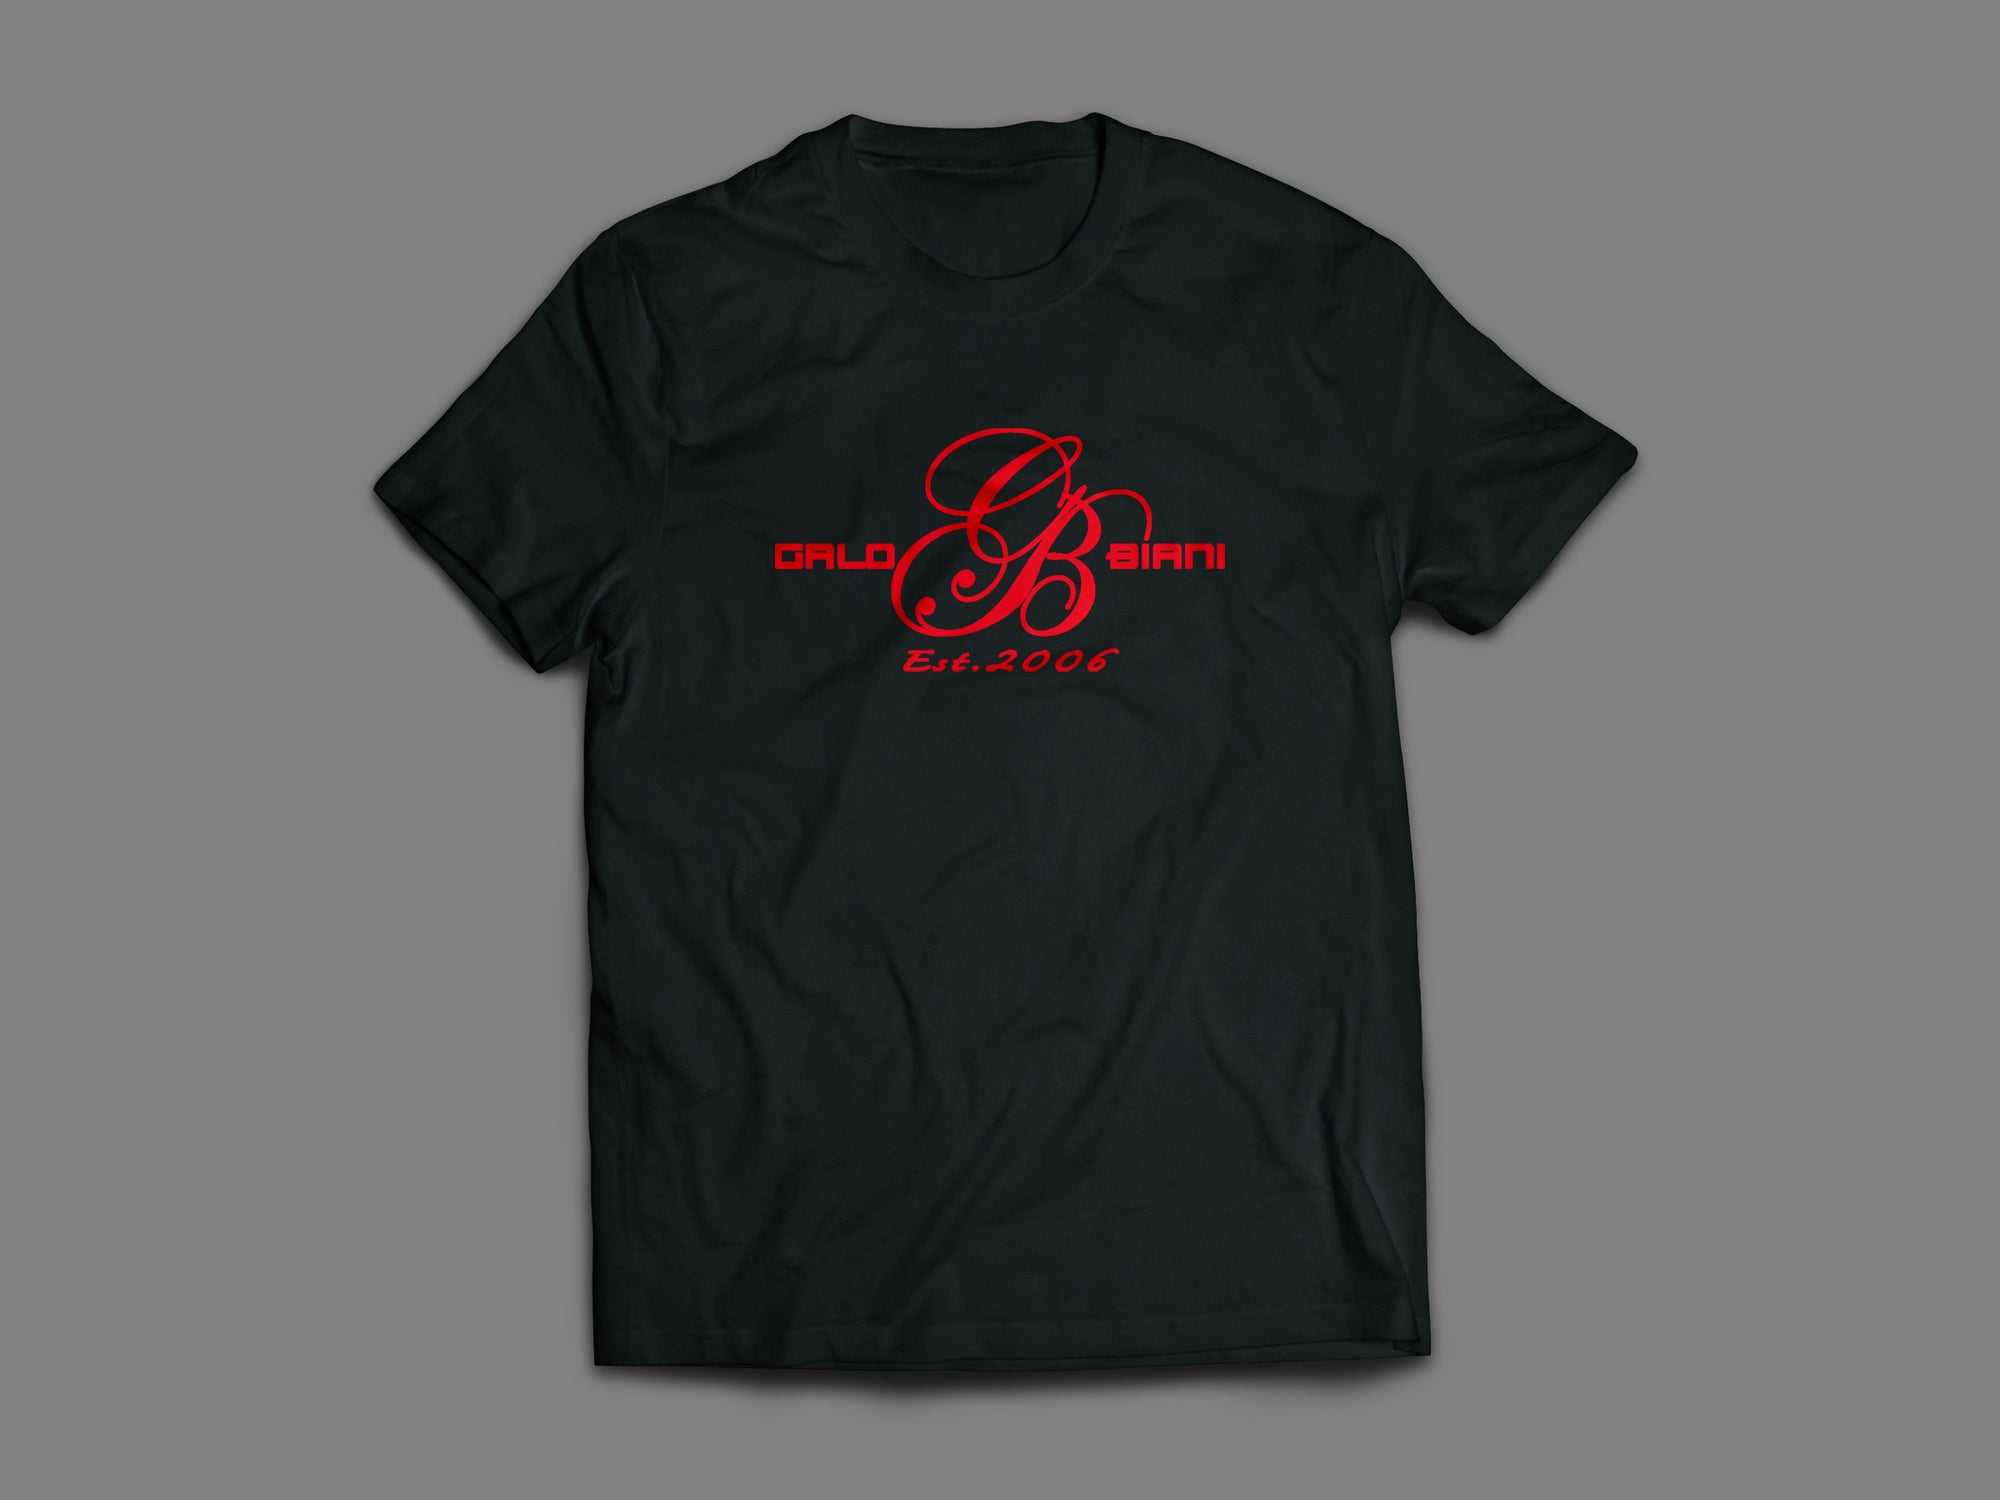 Established 2006 T-shirt